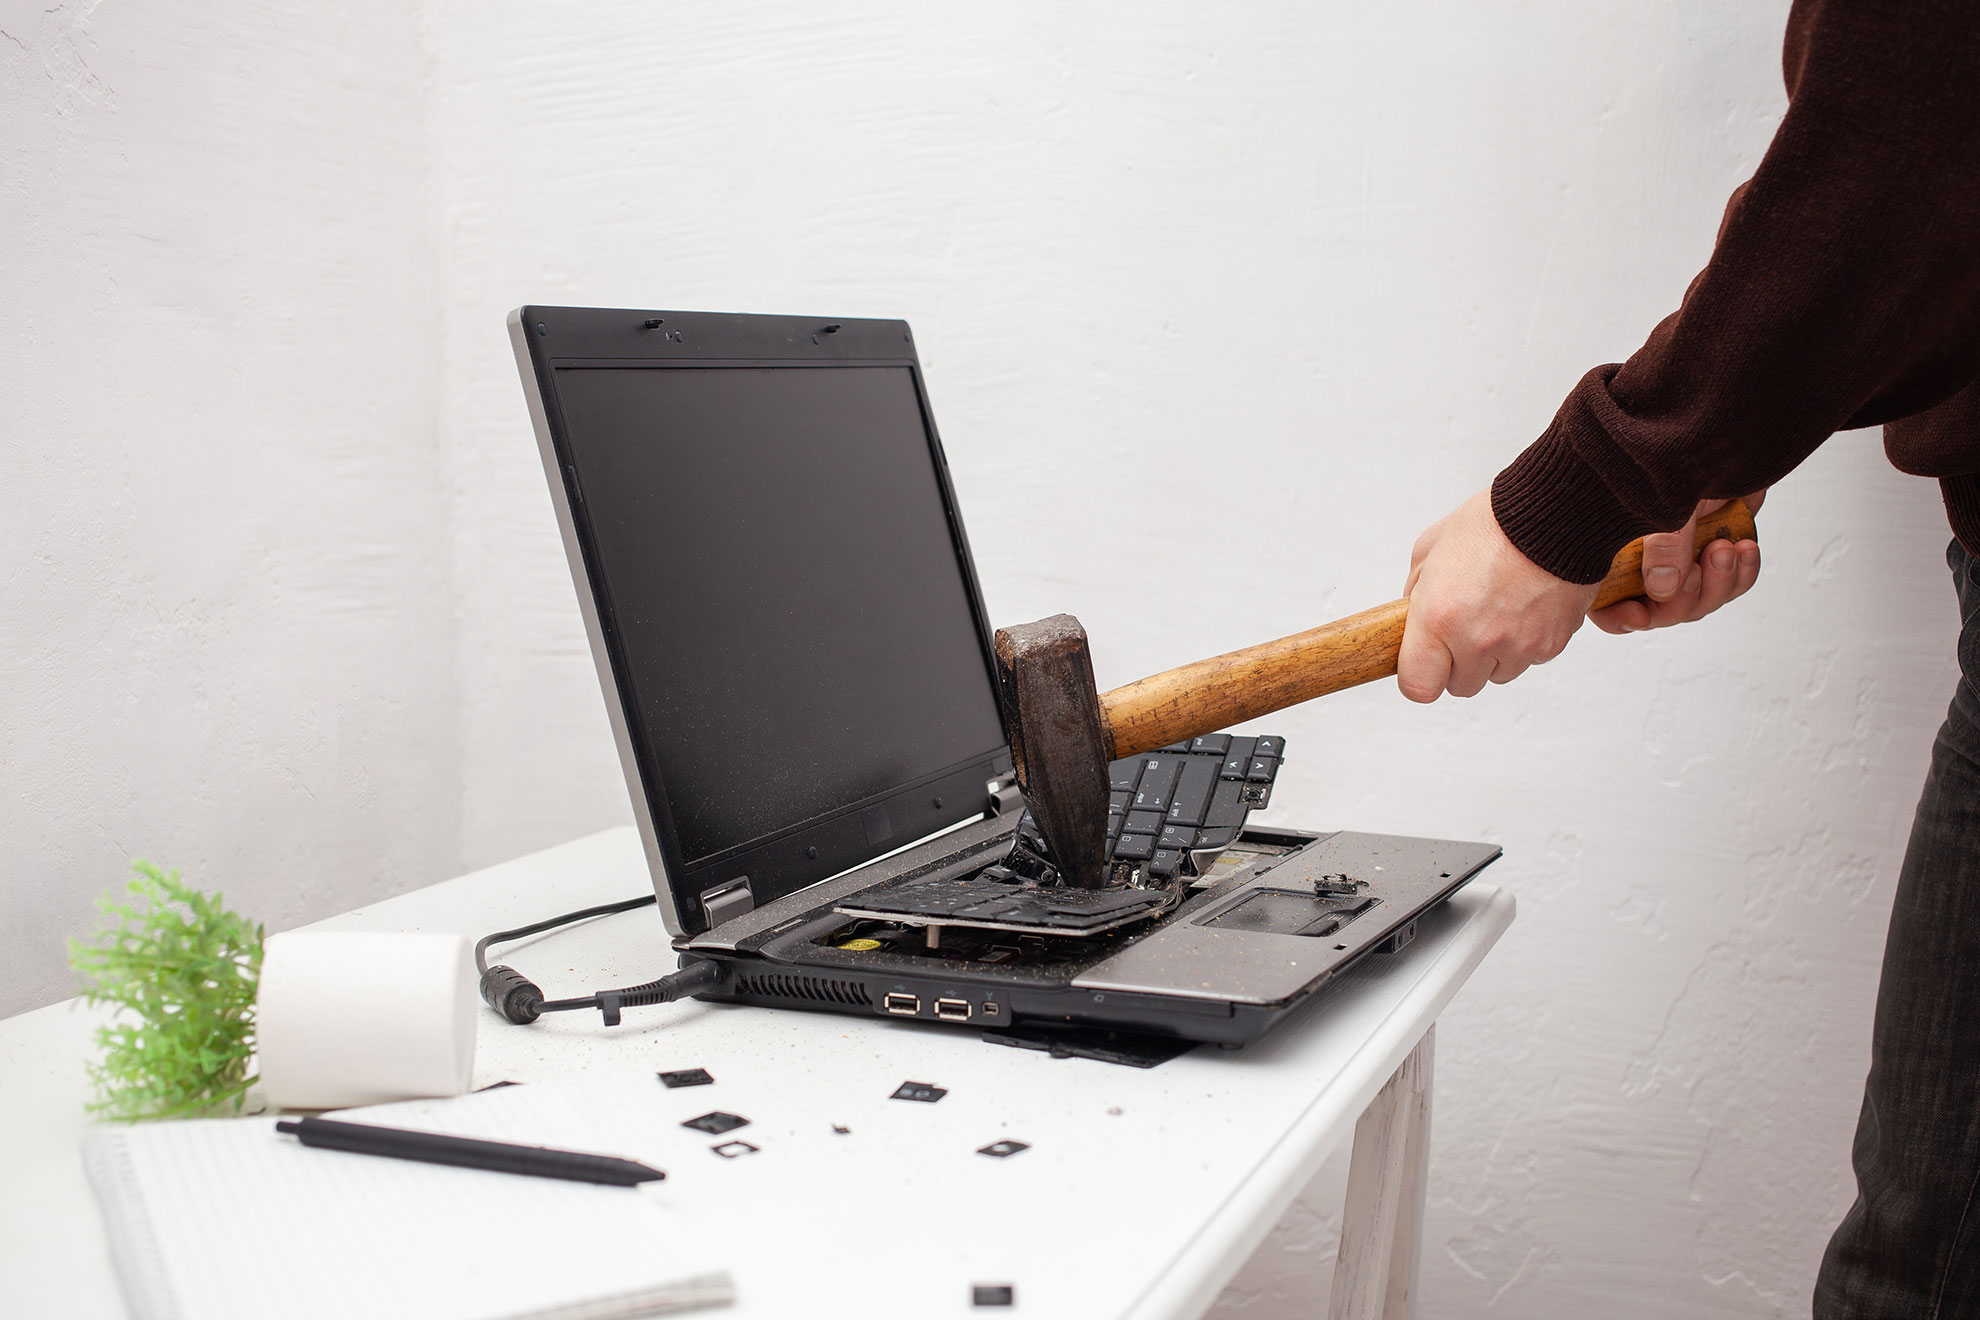 Niszczenie laptopa, ilustracja do artykułu wyjaśniającego pojęcie lagowania